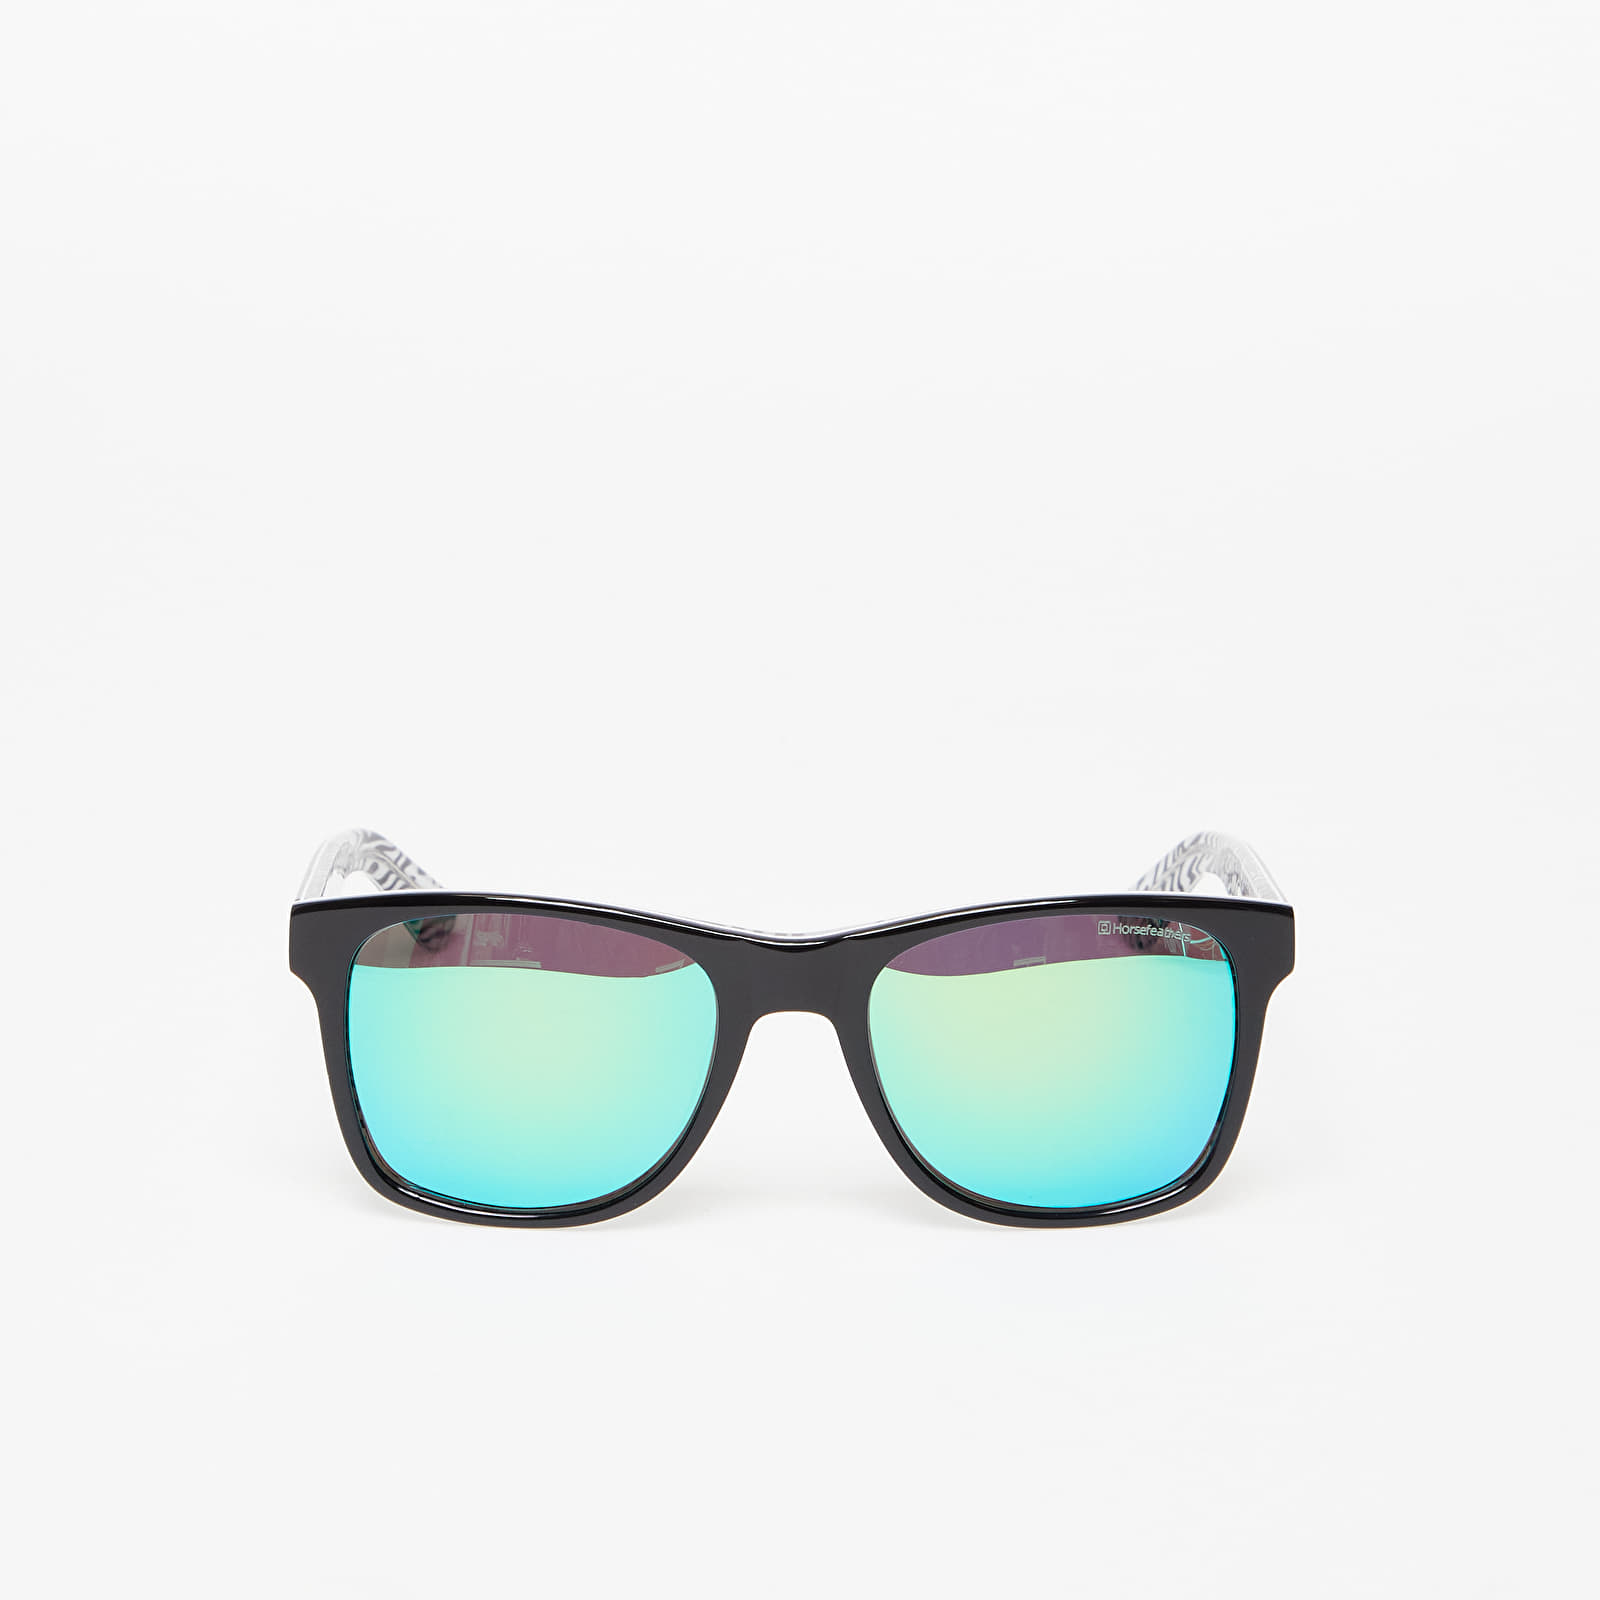 Слънчеви очила Horsefeathers Foster Sunglasses Zebra/Mirror Green 735202